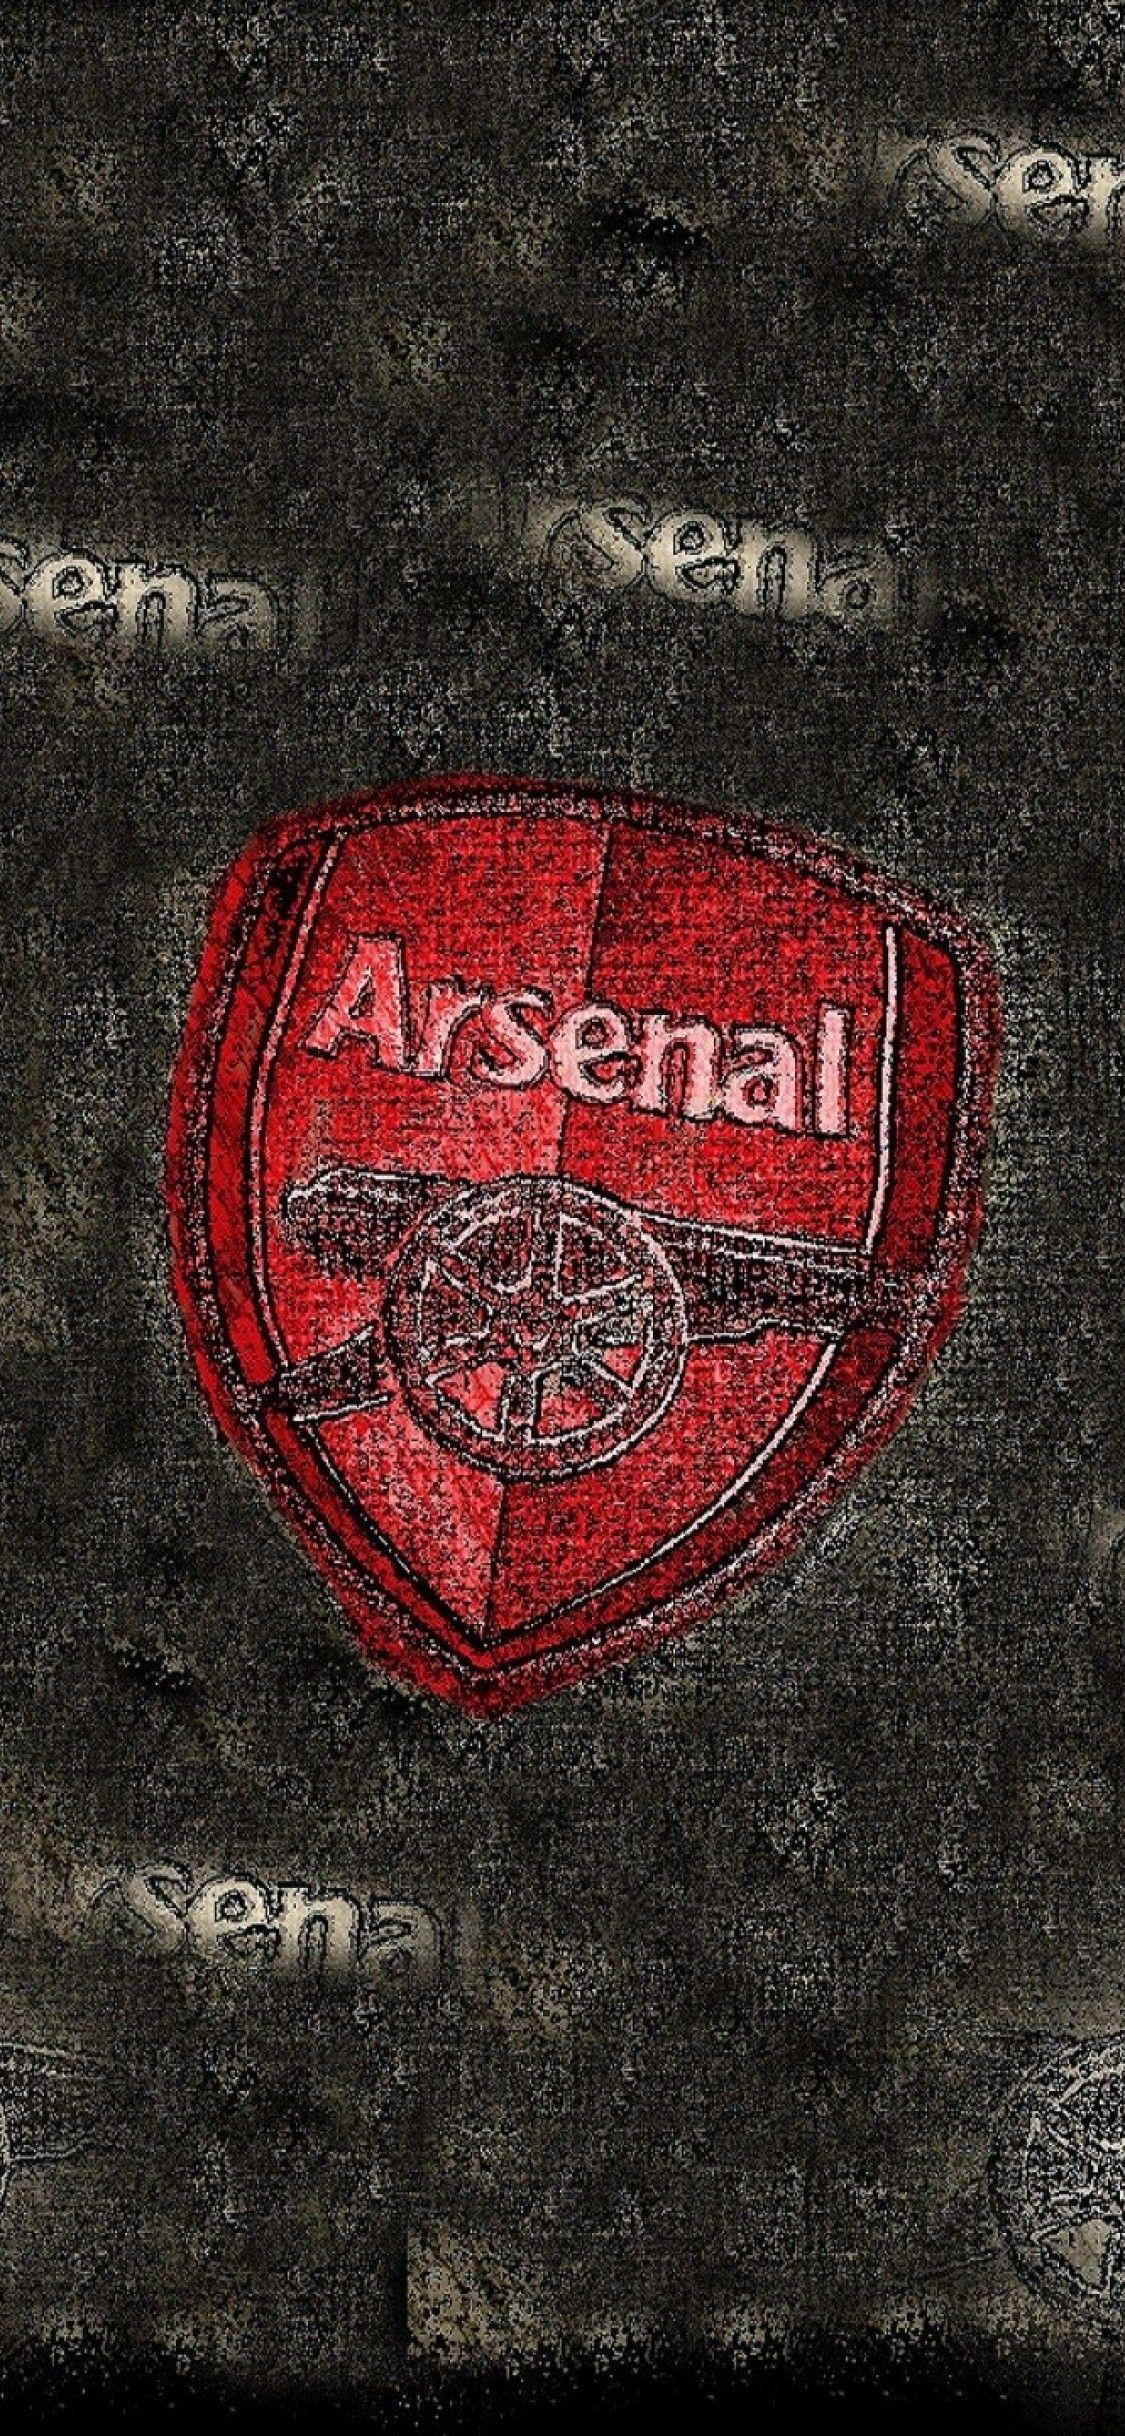 Tổng hợp logo Arsenal đẹp nhất | Arsenal wallpapers, Arsenal fc wallpapers,  Arsenal